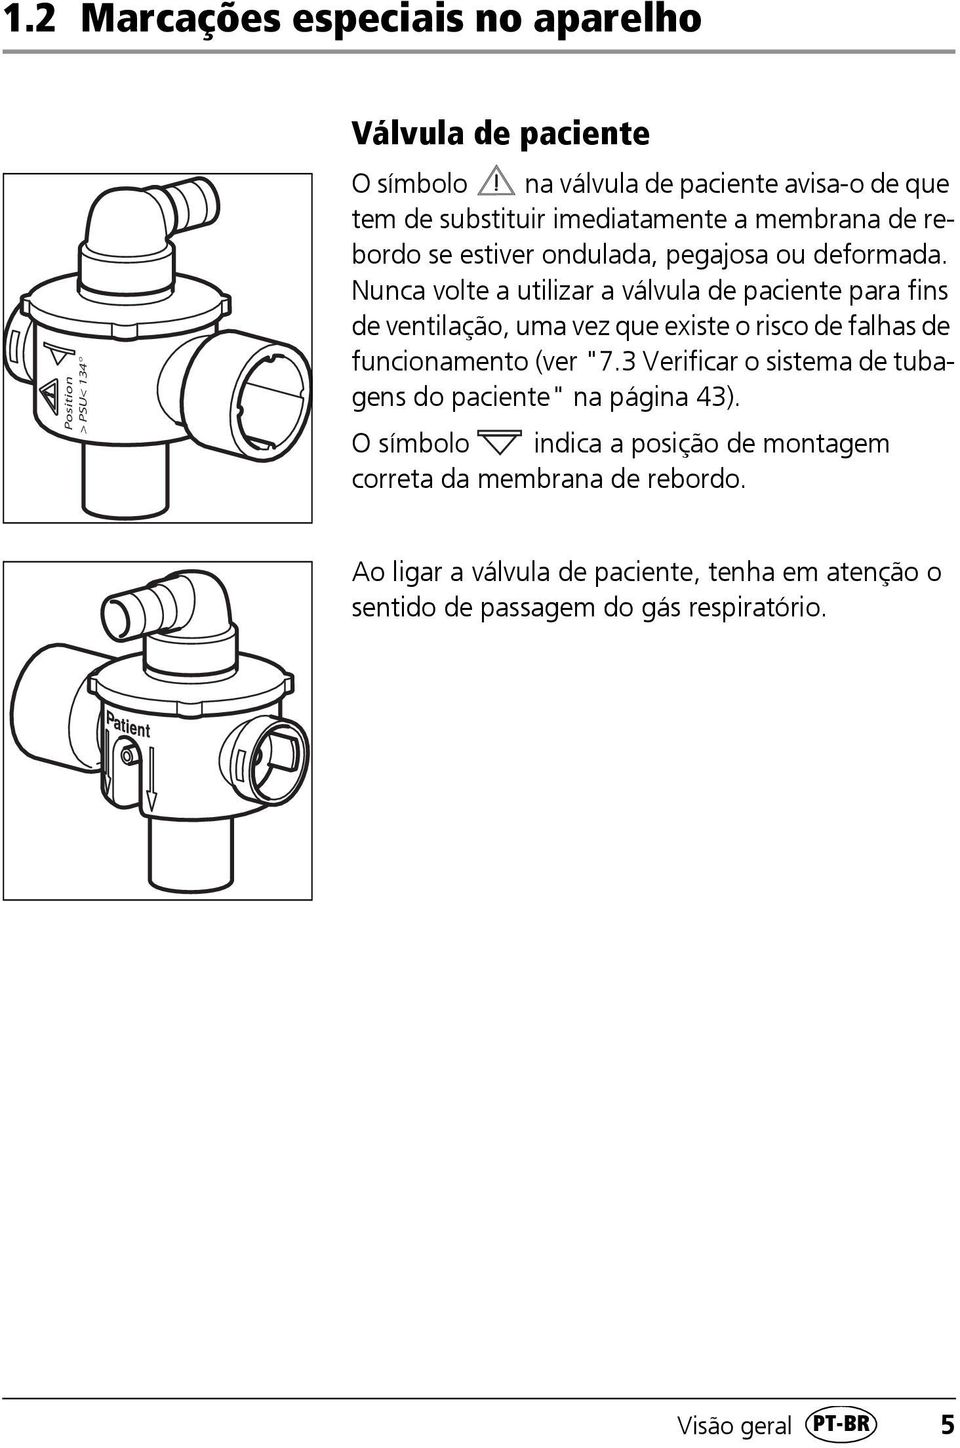 Nunca volte a utilizar a válvula de paciente para fins de ventilação, uma vez que existe o risco de falhas de funcionamento (ver "7.